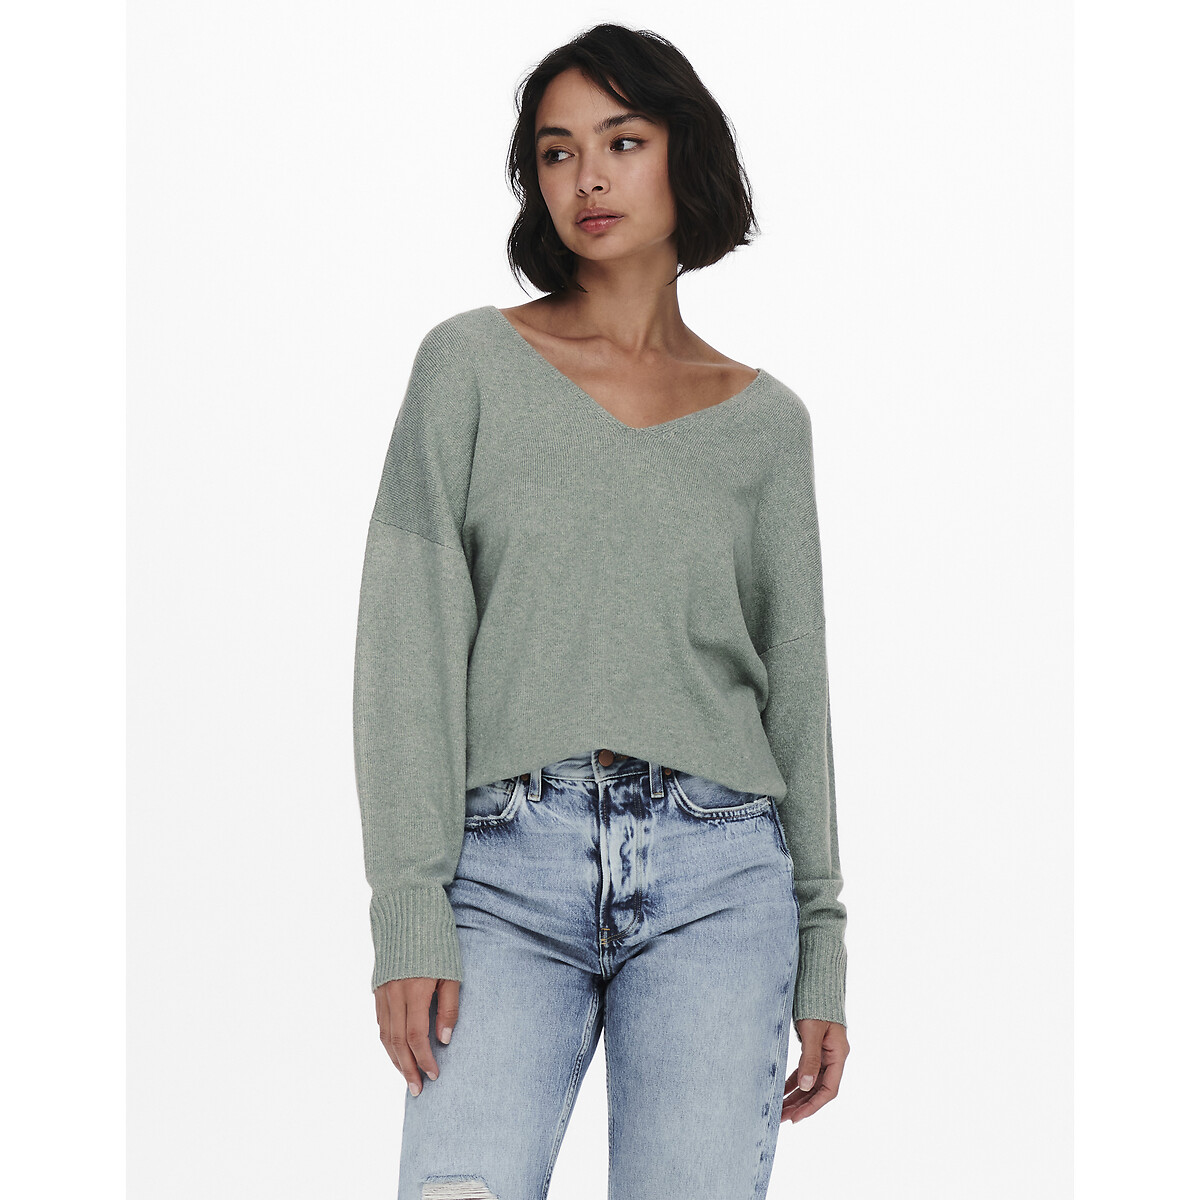 Пуловер ONLY Пуловер С V-образным вырезом из тонкого трикотажа S зеленый, размер S - фото 1